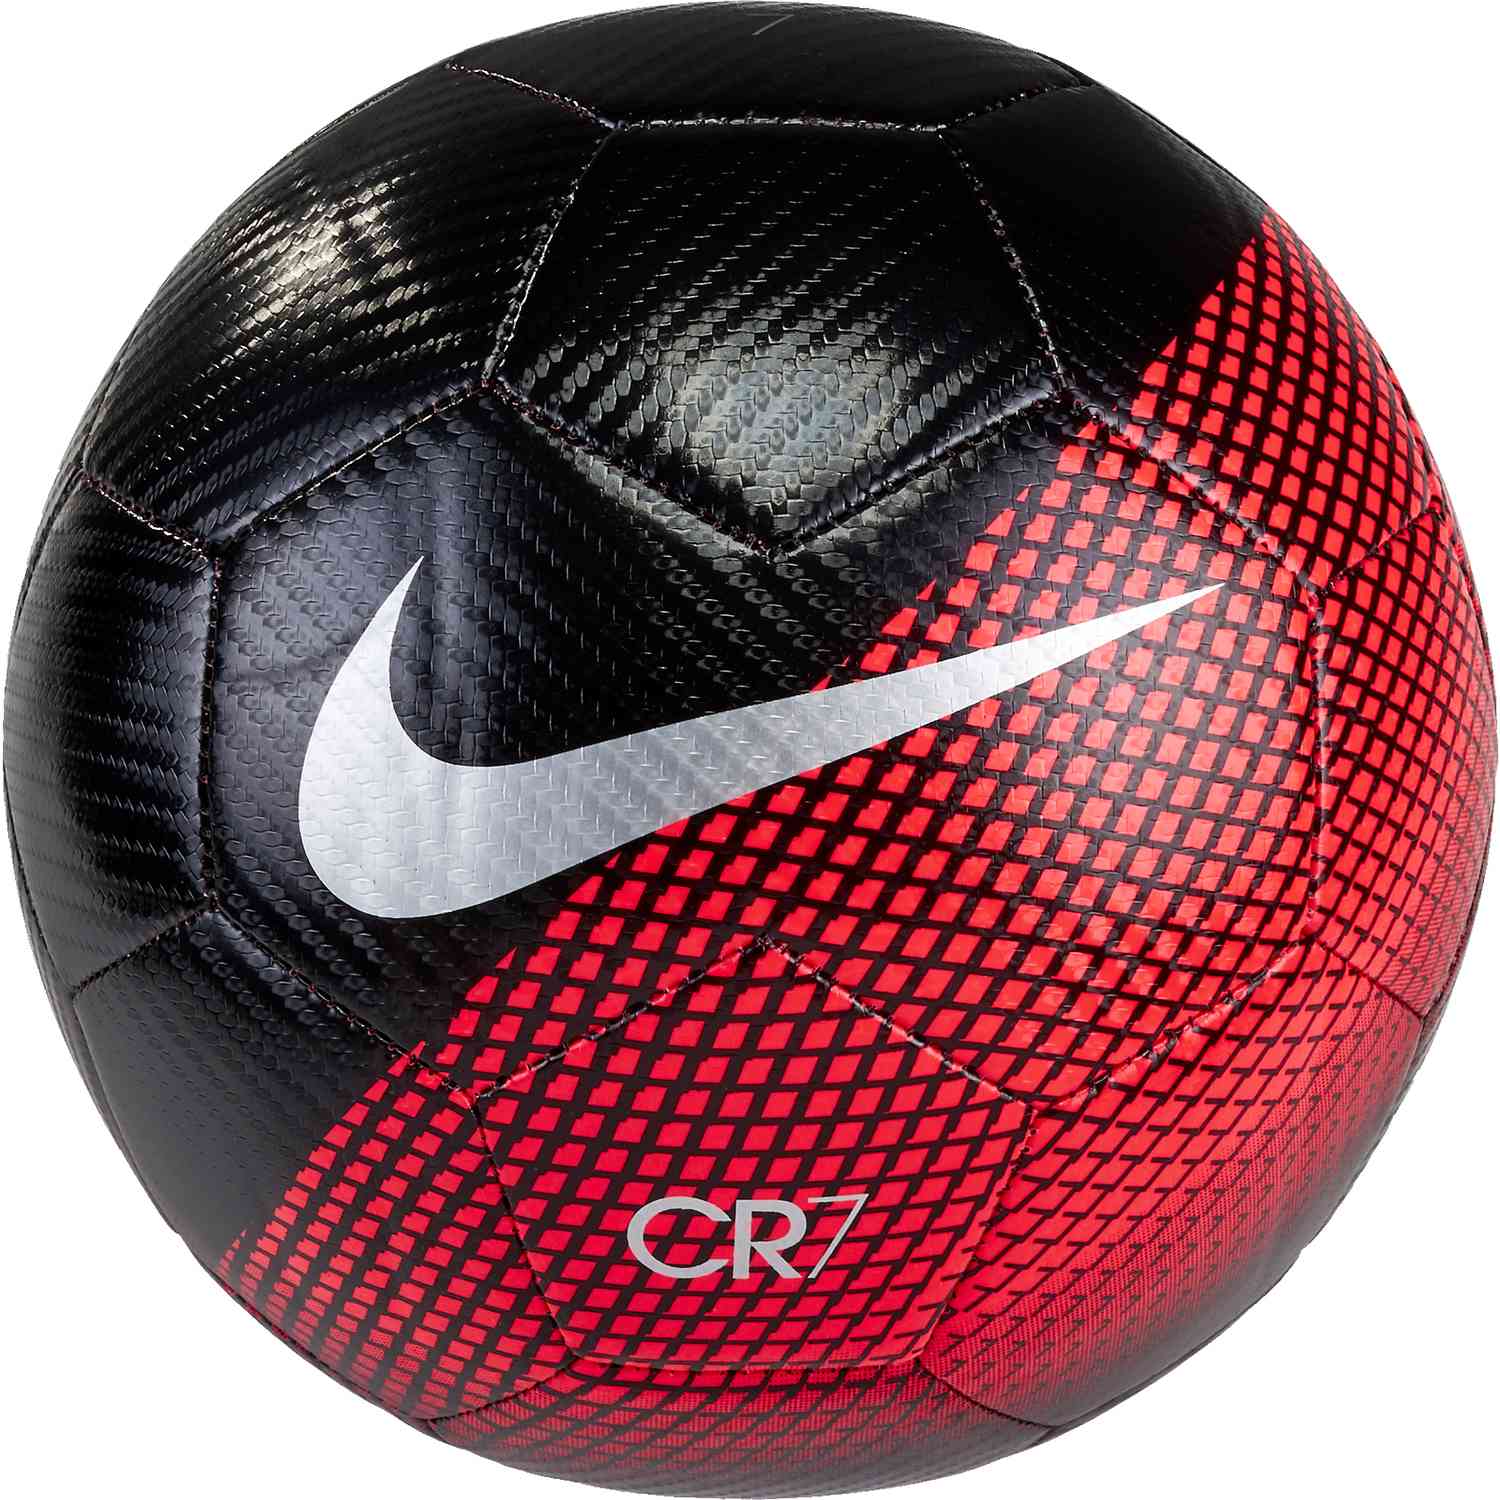 Nike CR7 Prestige Soccer Ball - Carved In Stone - SoccerPro.com